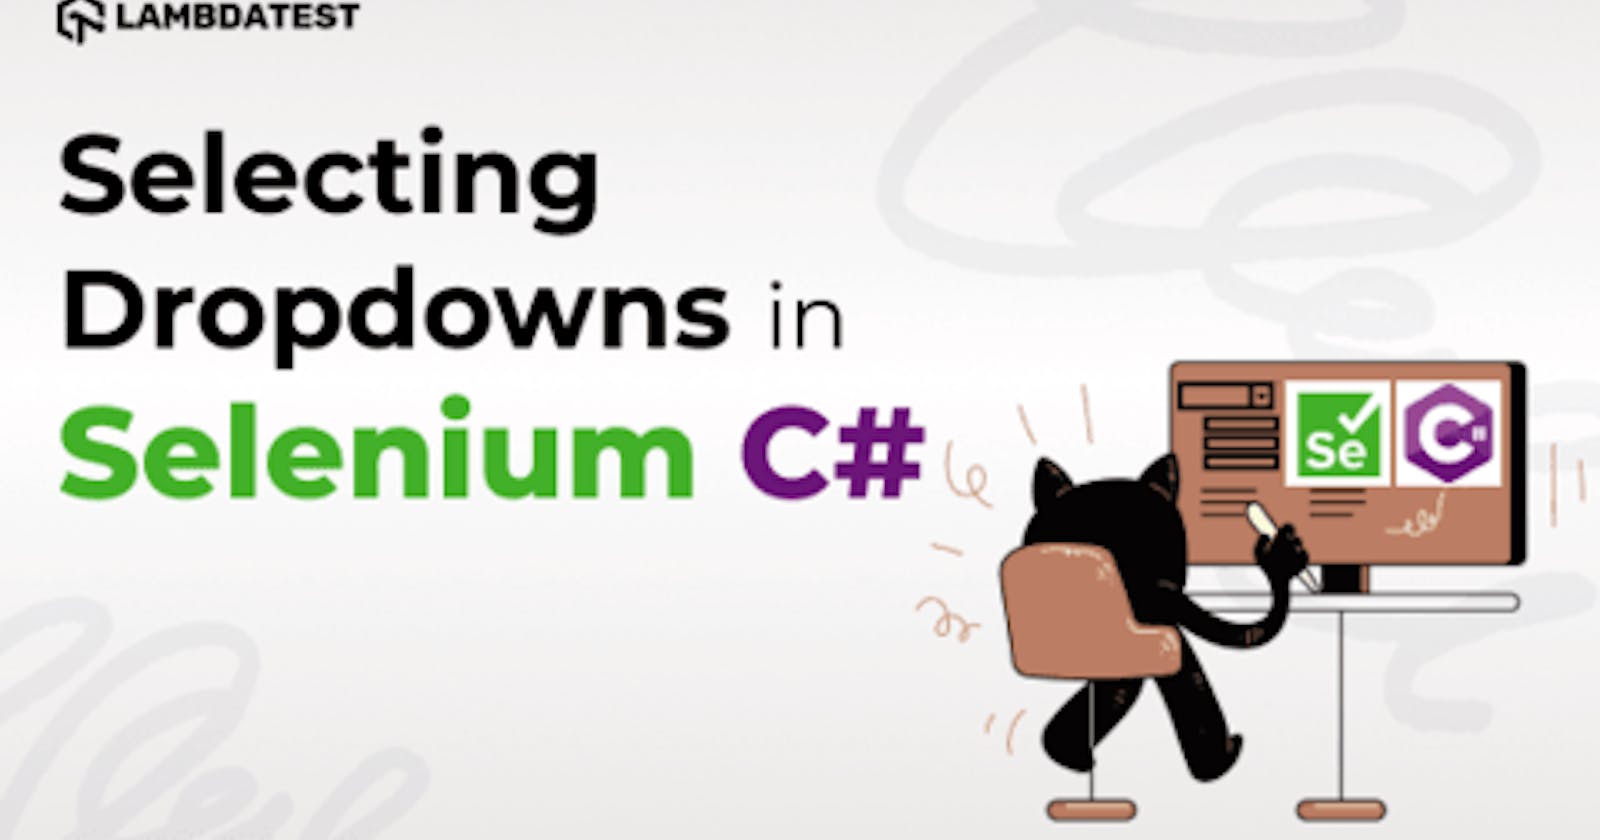 How To Select Dropdown In Selenium C#